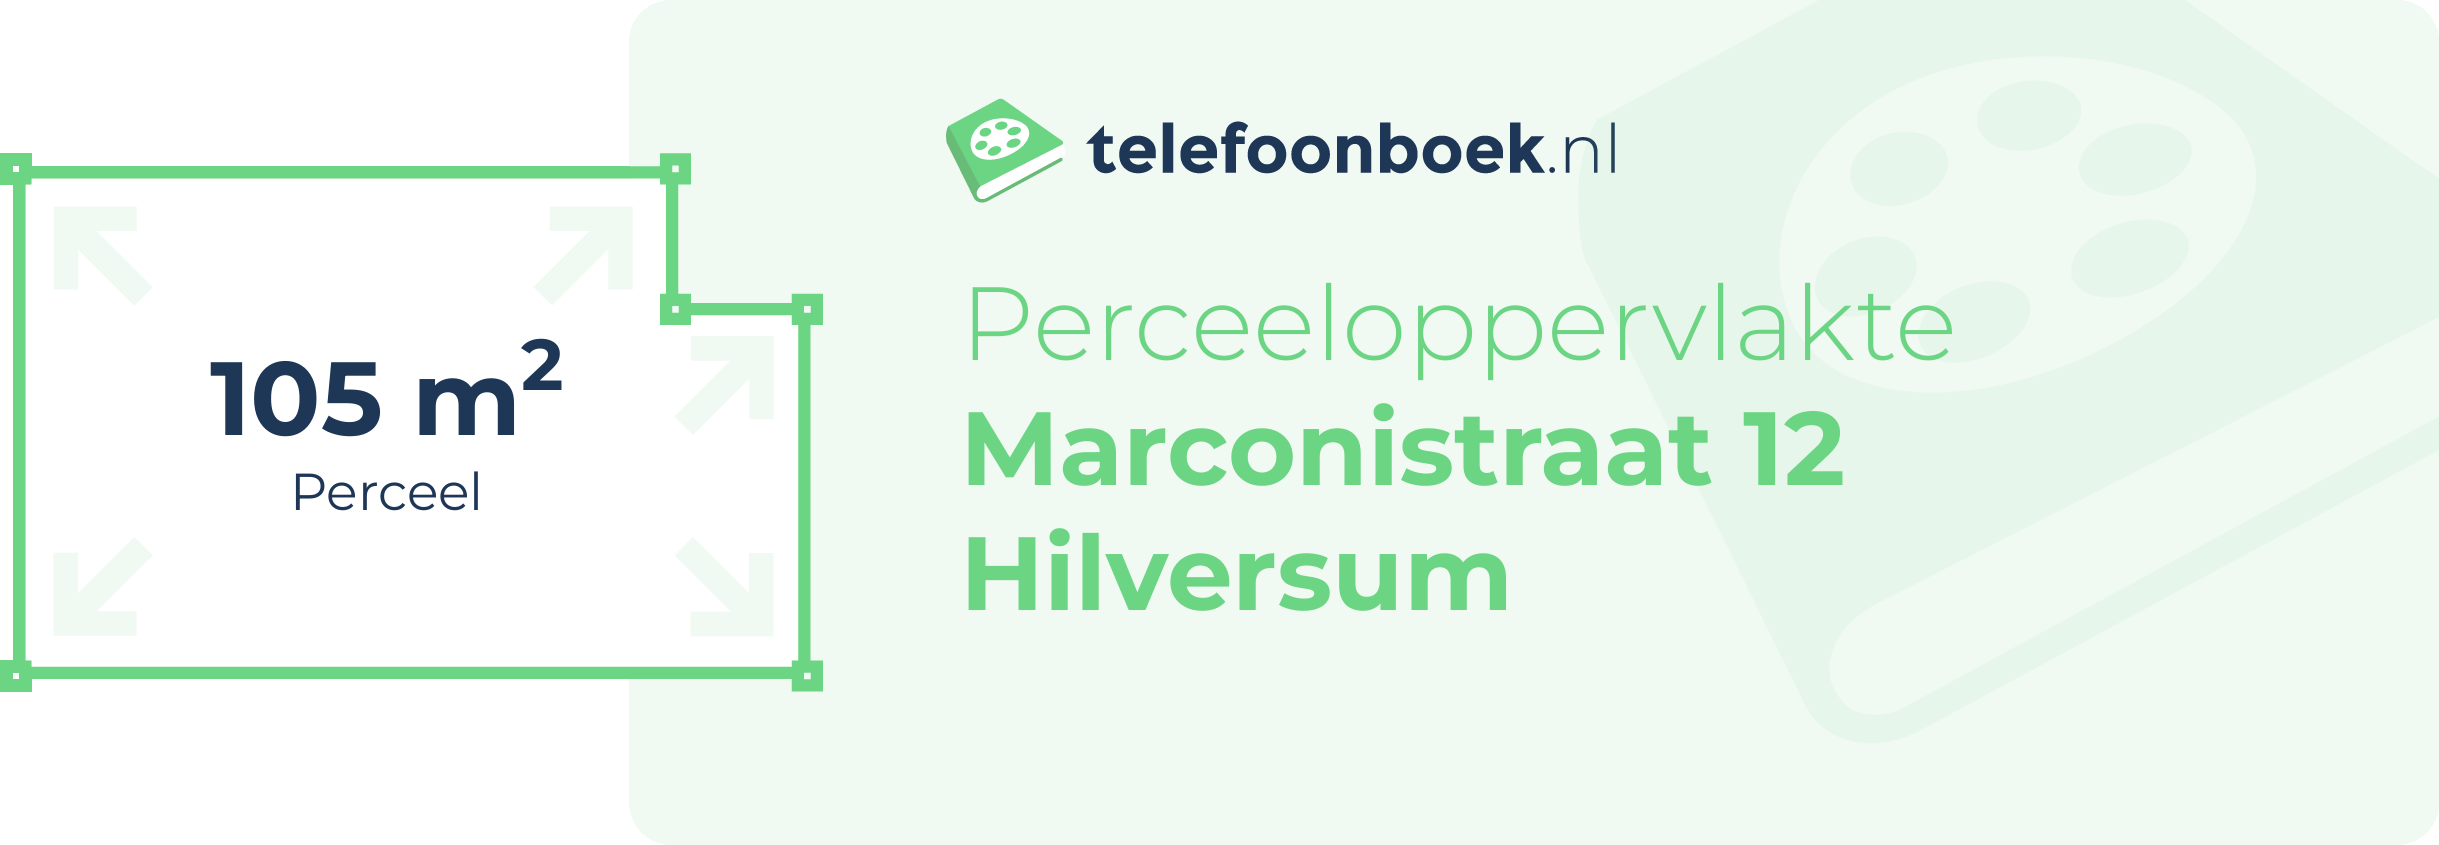 Perceeloppervlakte Marconistraat 12 Hilversum